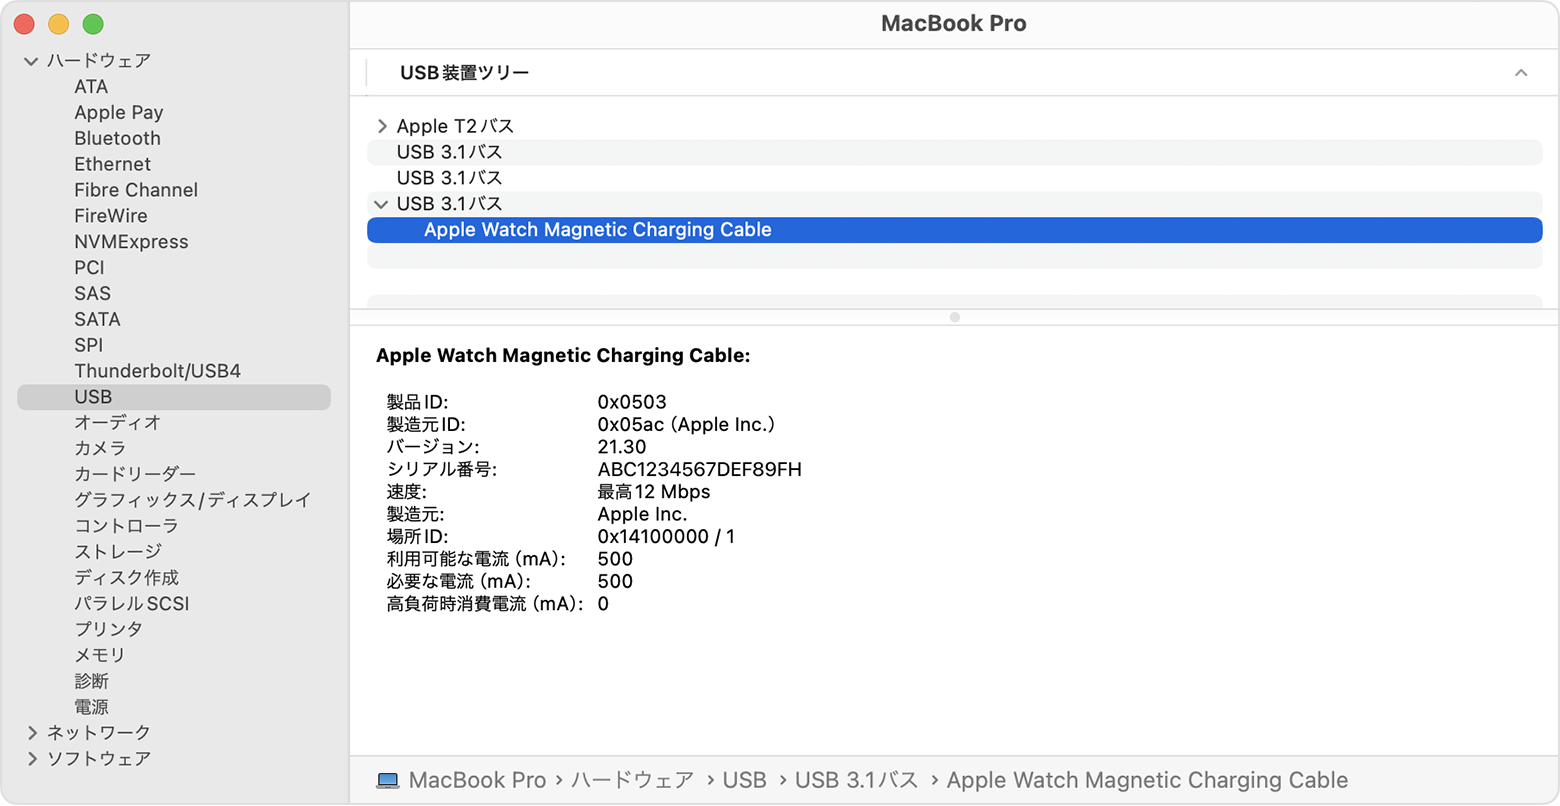 MacBook Pro のシステムレポートに Apple Watch 磁気充電ケーブルの製造元が表示されているところ